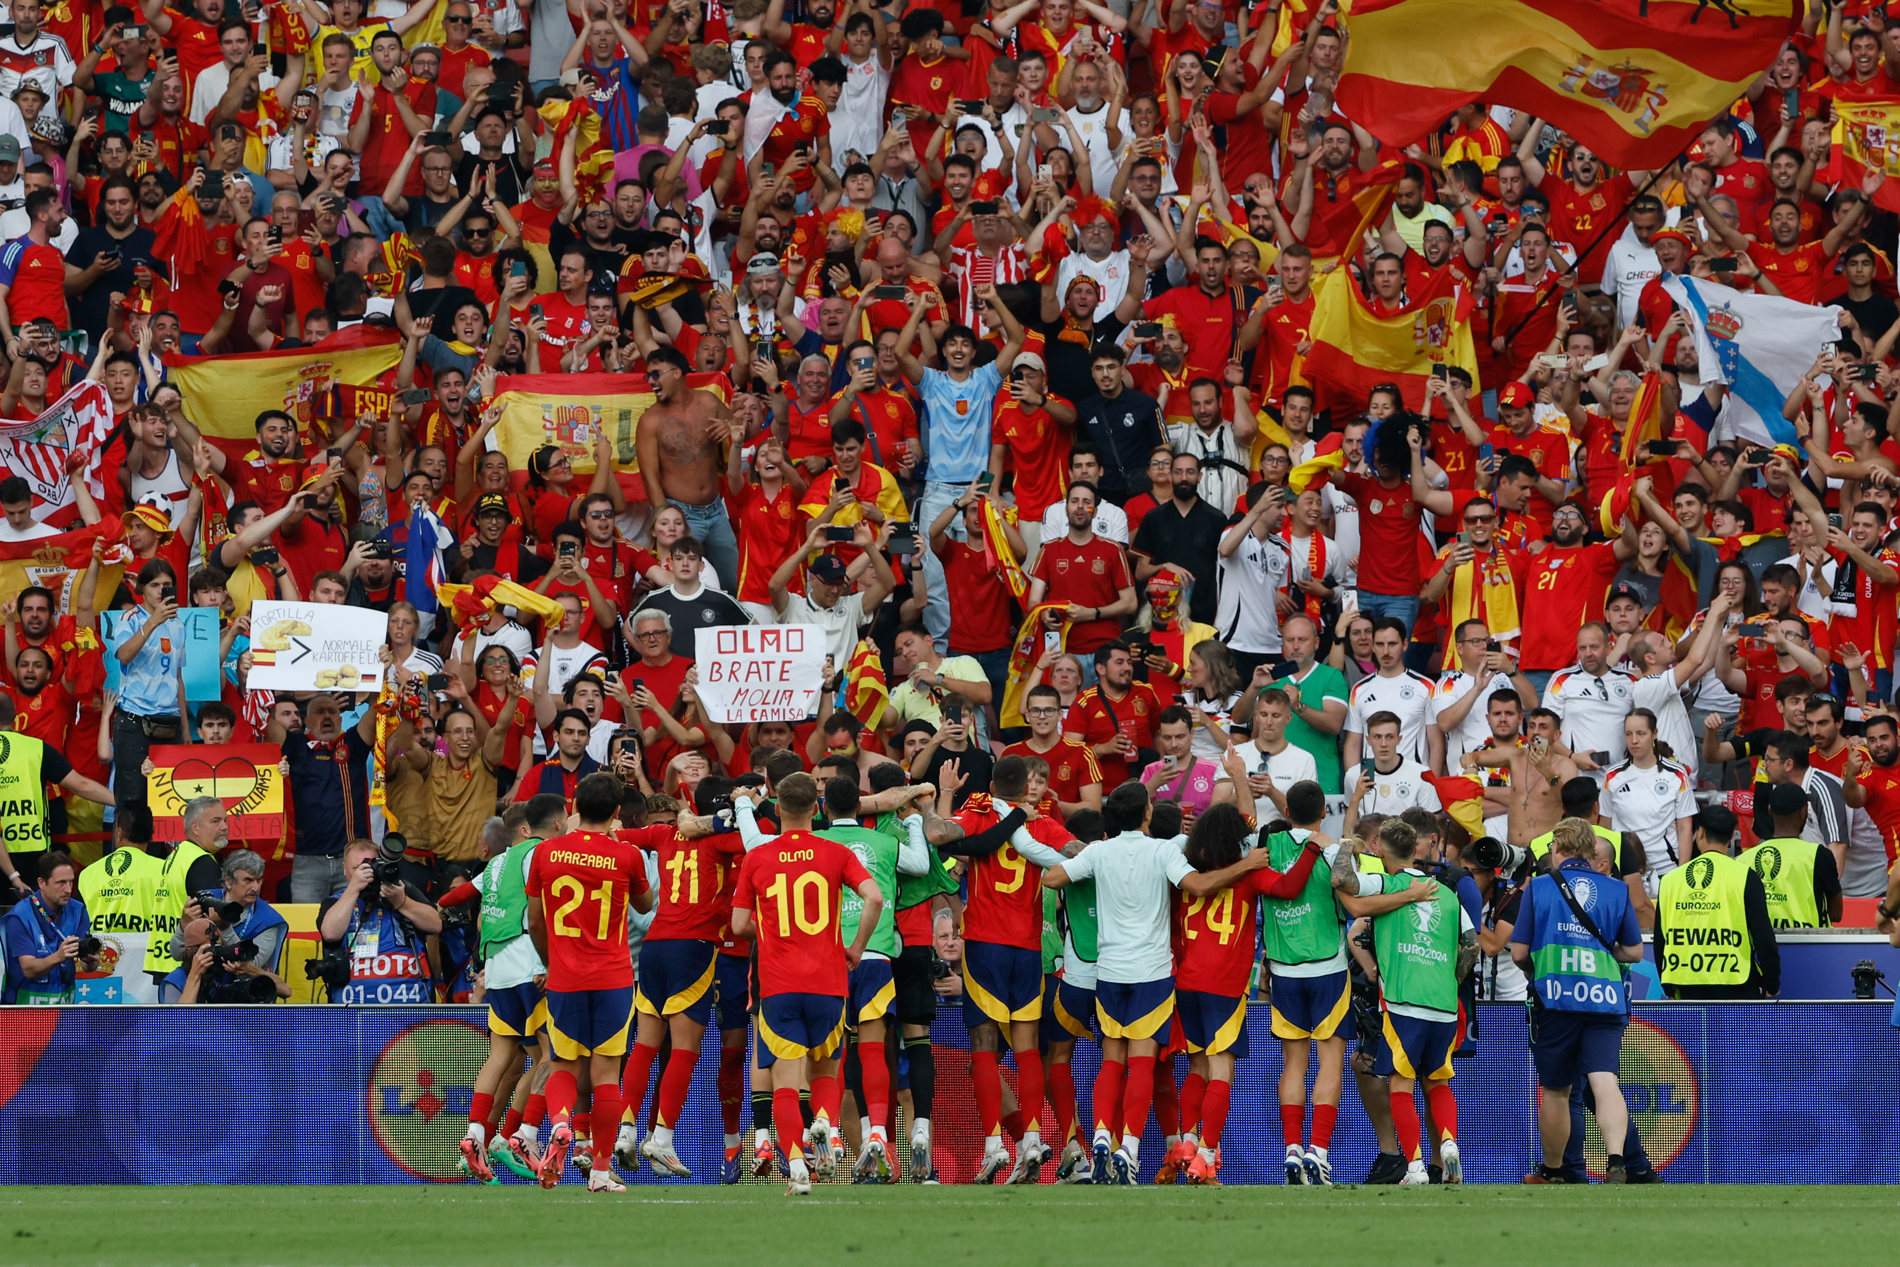 Grandiloqüència en unes portades futbolístiques a major glòria de la selecció espanyola